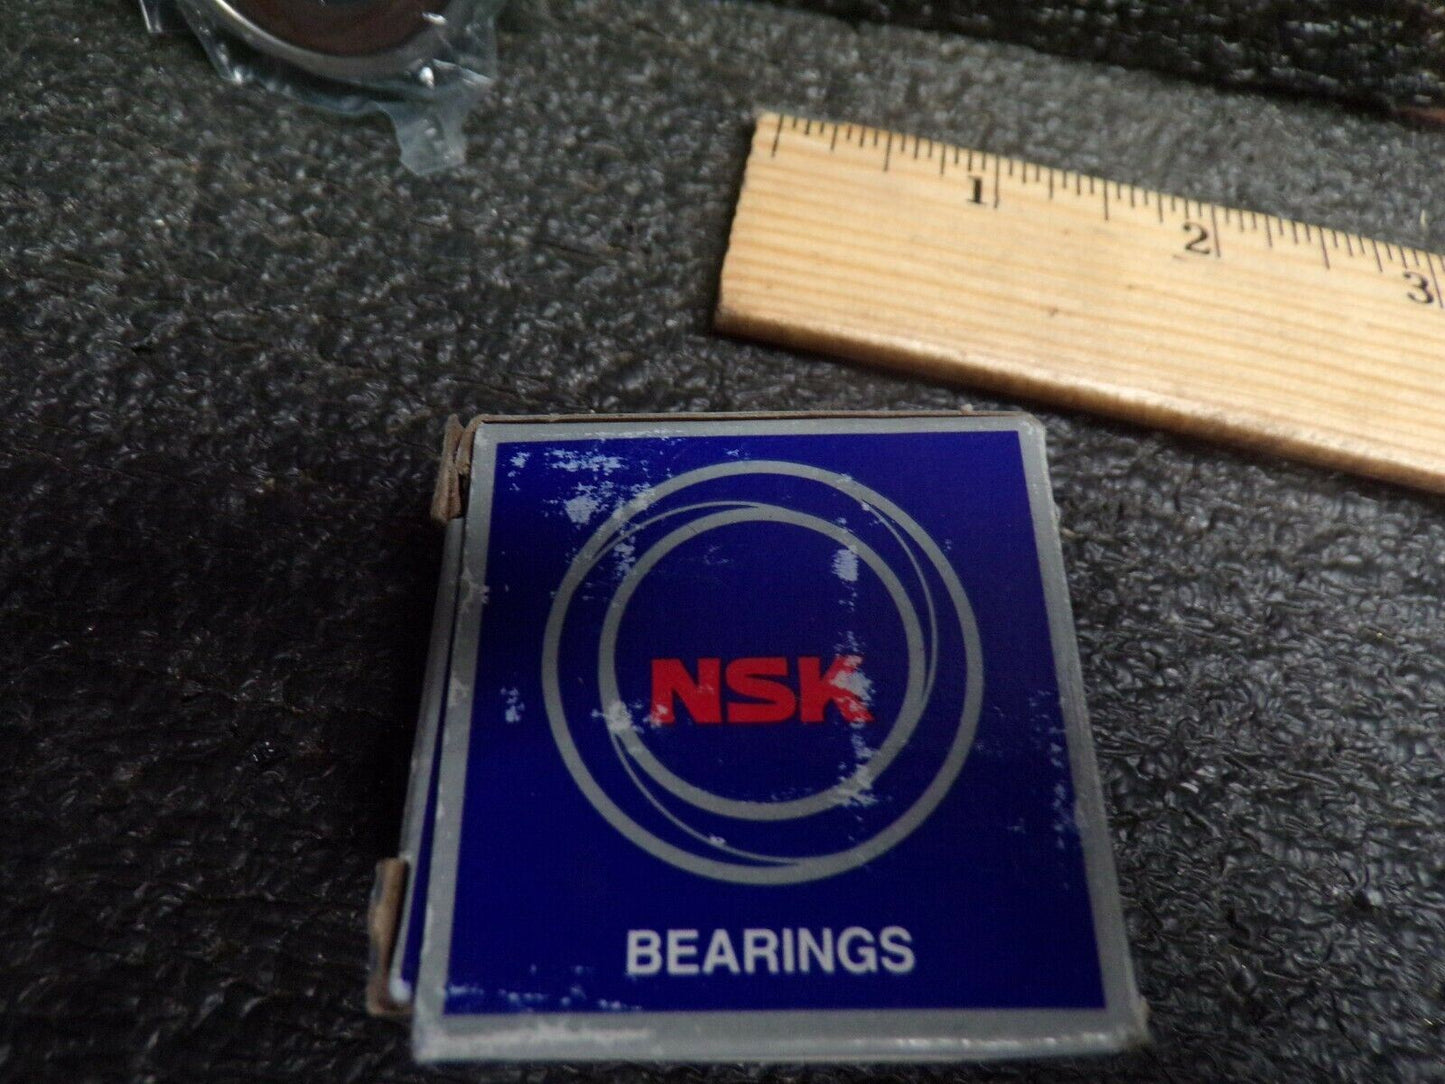 NSK 6203DDUC3 SRIS5 Deep Groove Ball Bearing (184466538095-BT26)